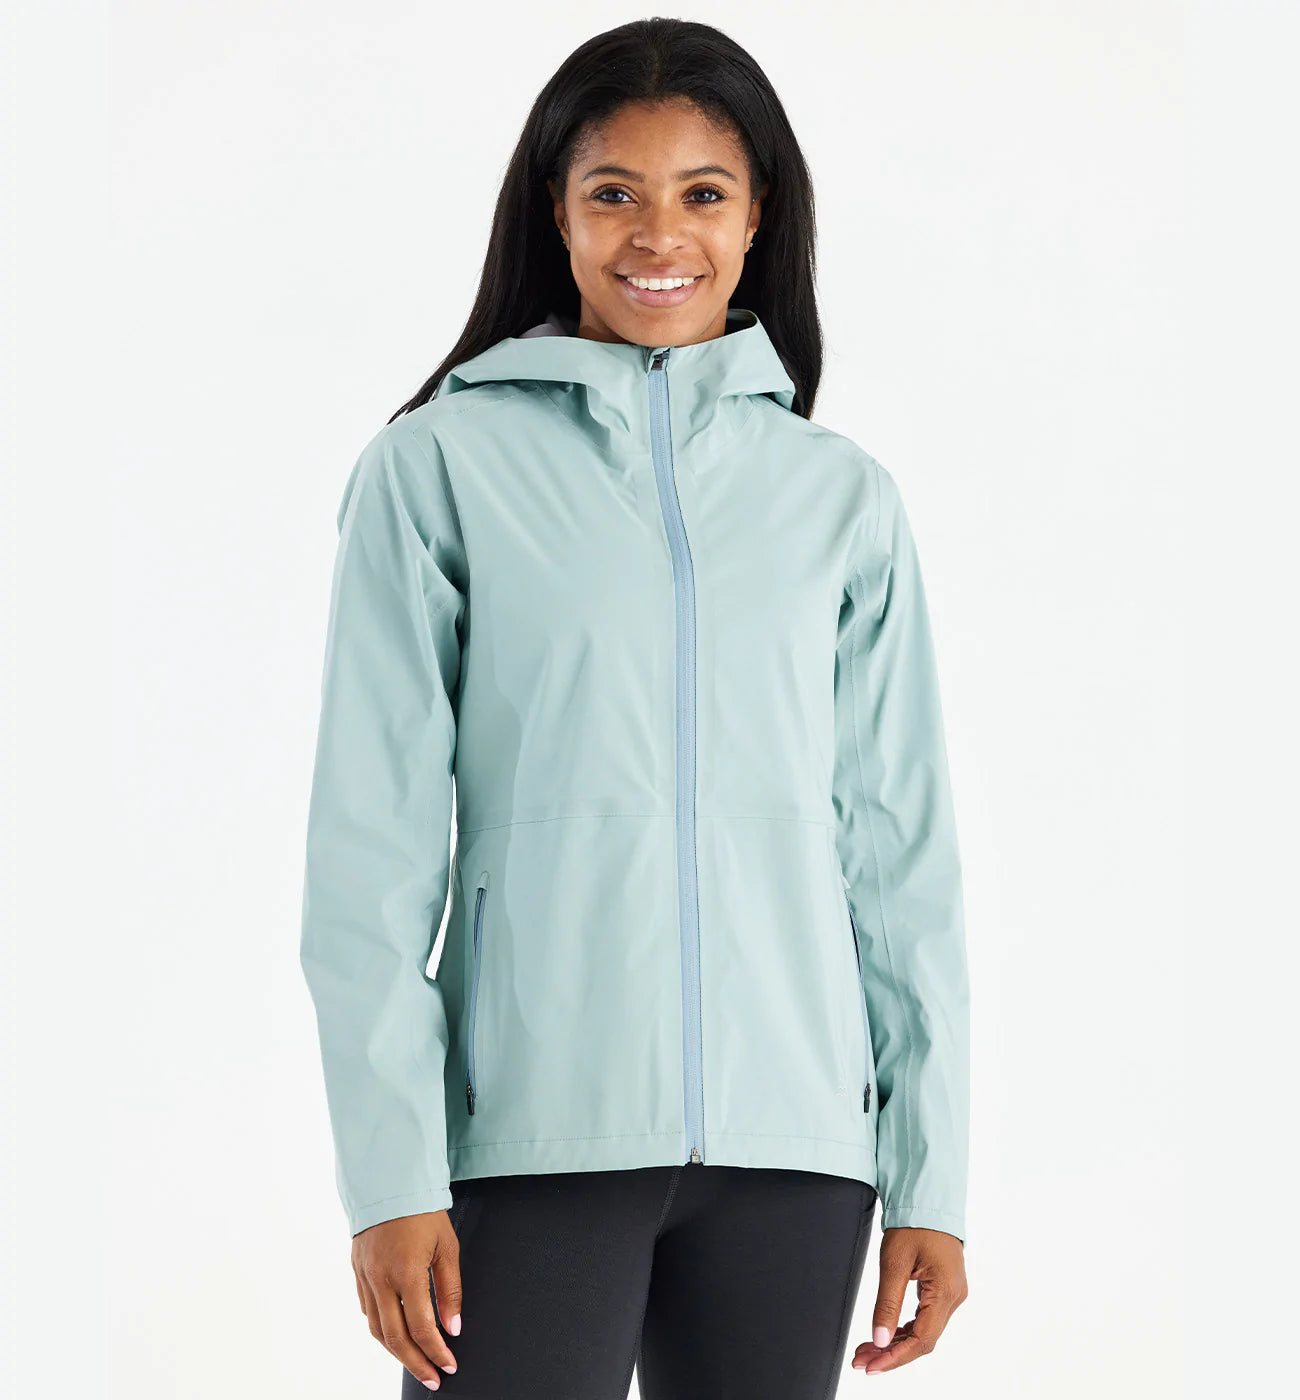 Women's Cloudshield Rain Jacket | Light Women's Rain Jacket – Free Fly ...